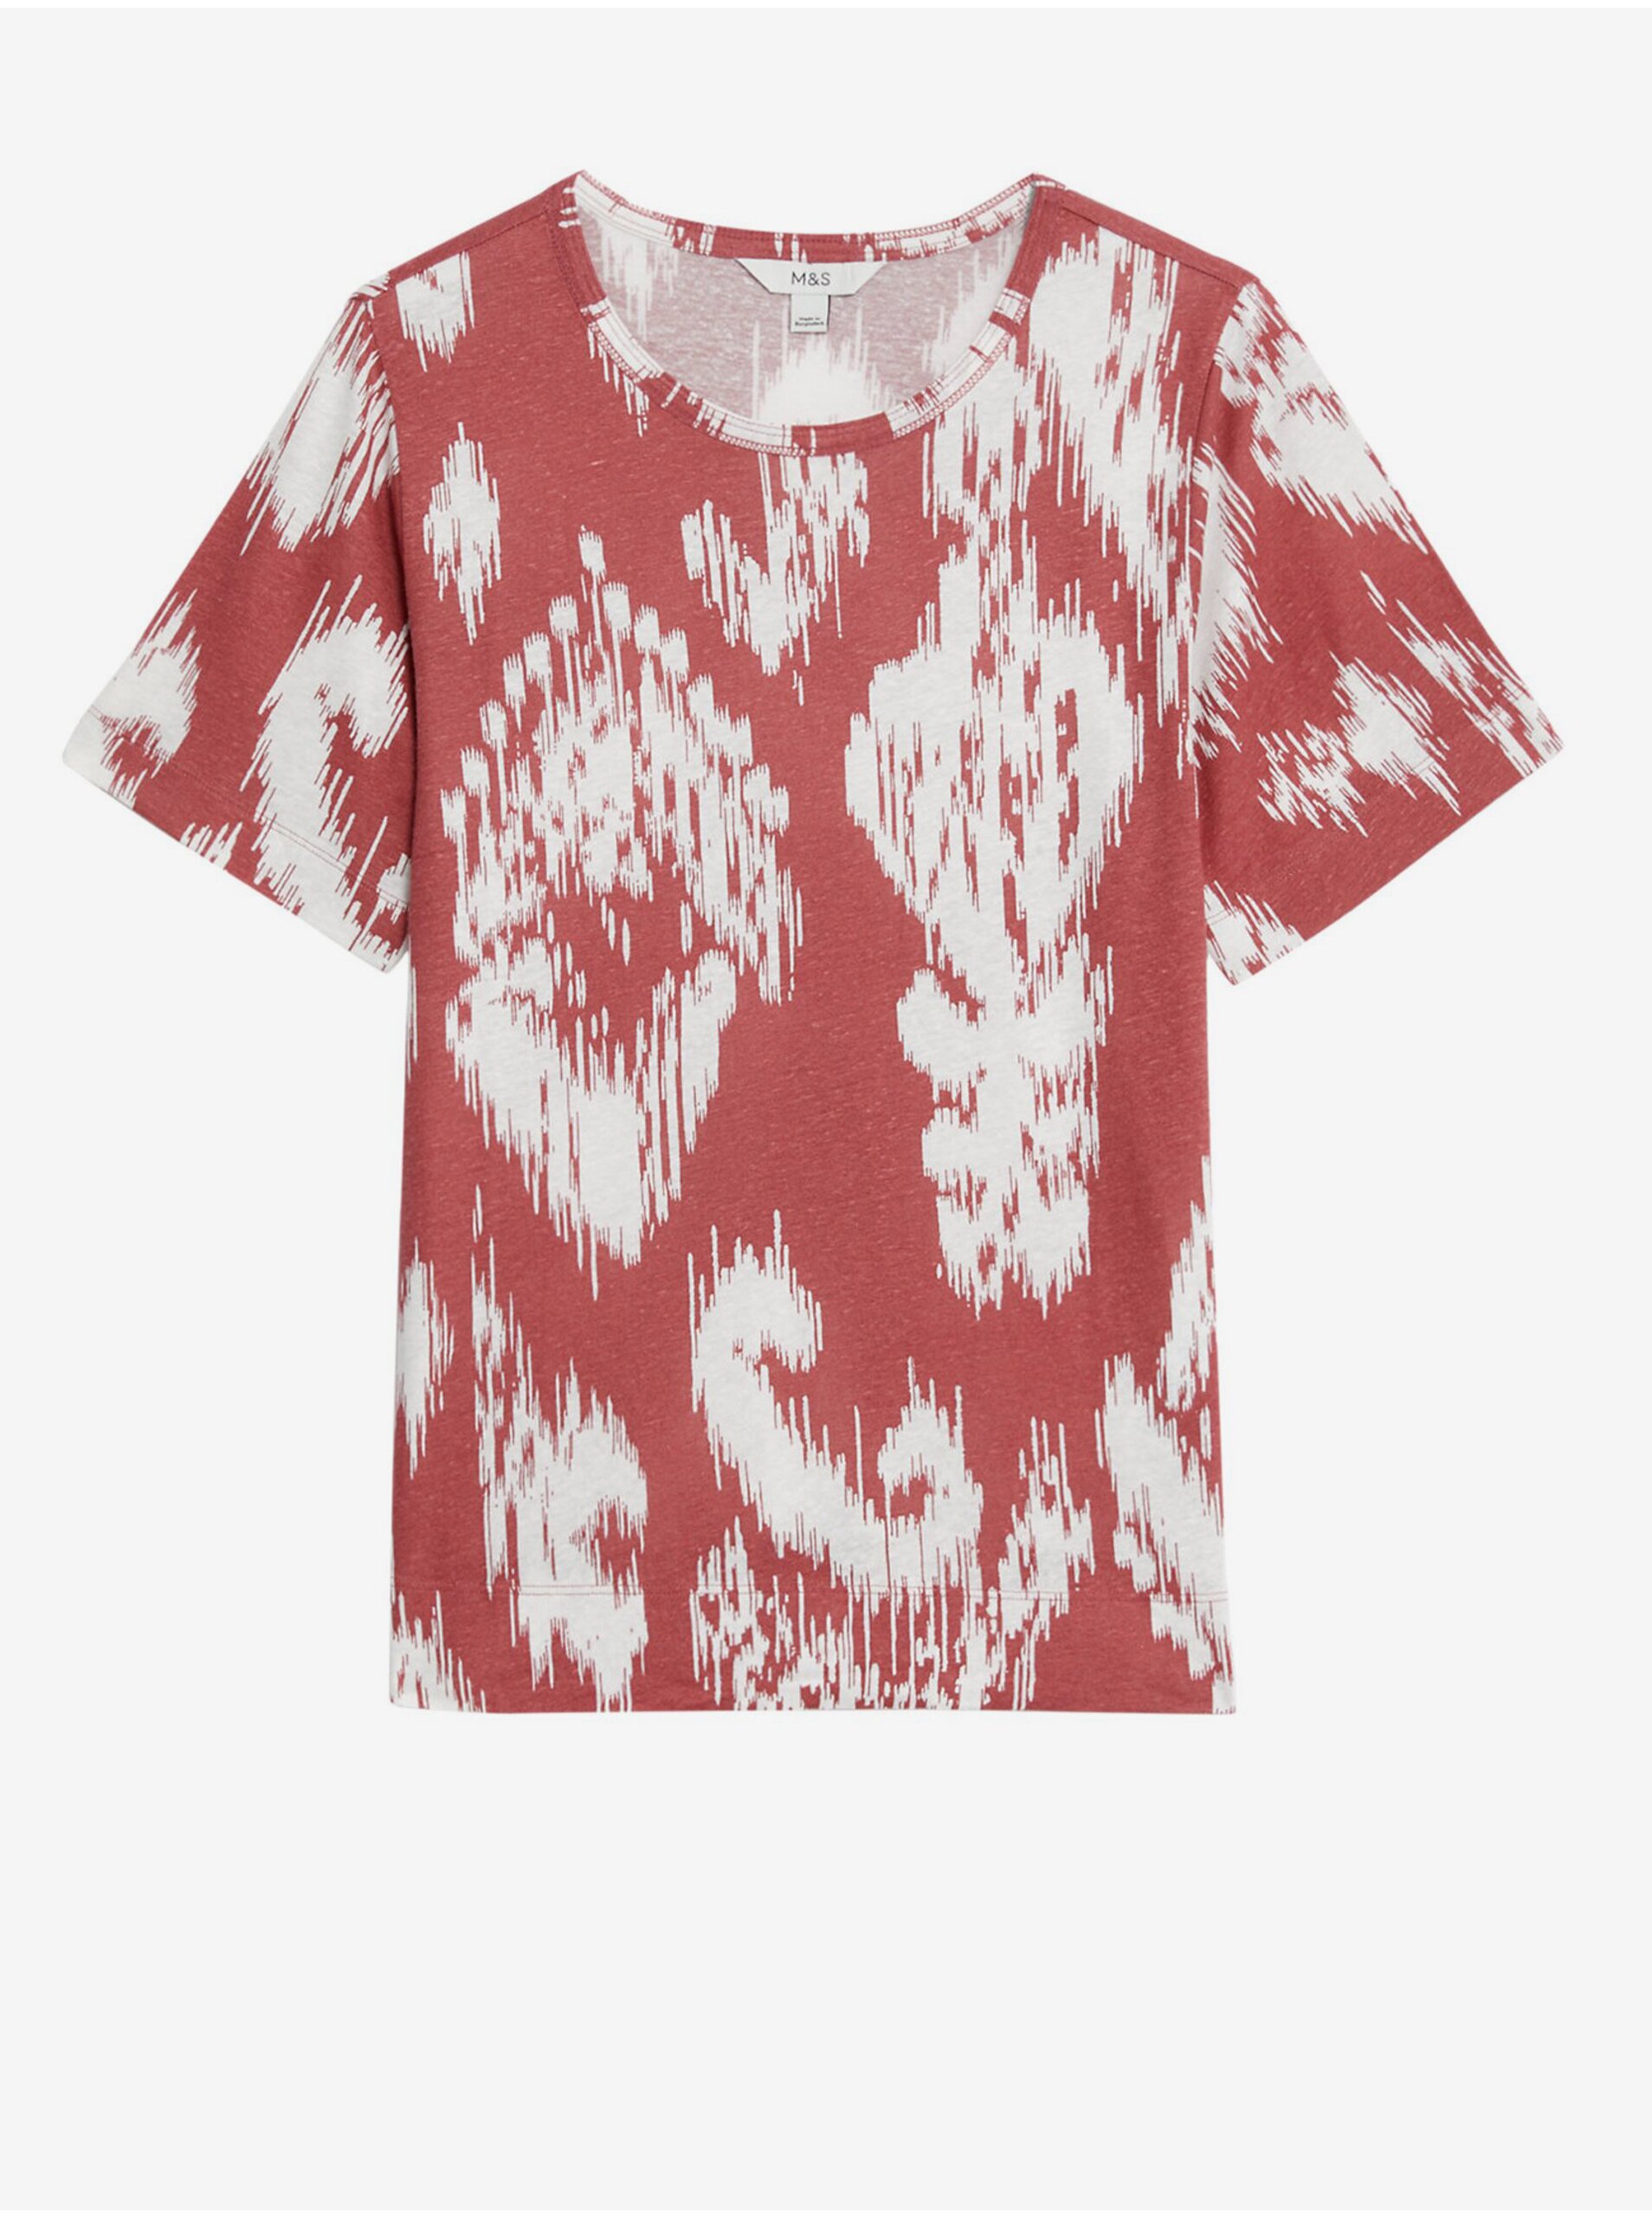 E-shop Bílo-červené dámské vzorované tričko s příměsí lnu Marks & Spencer